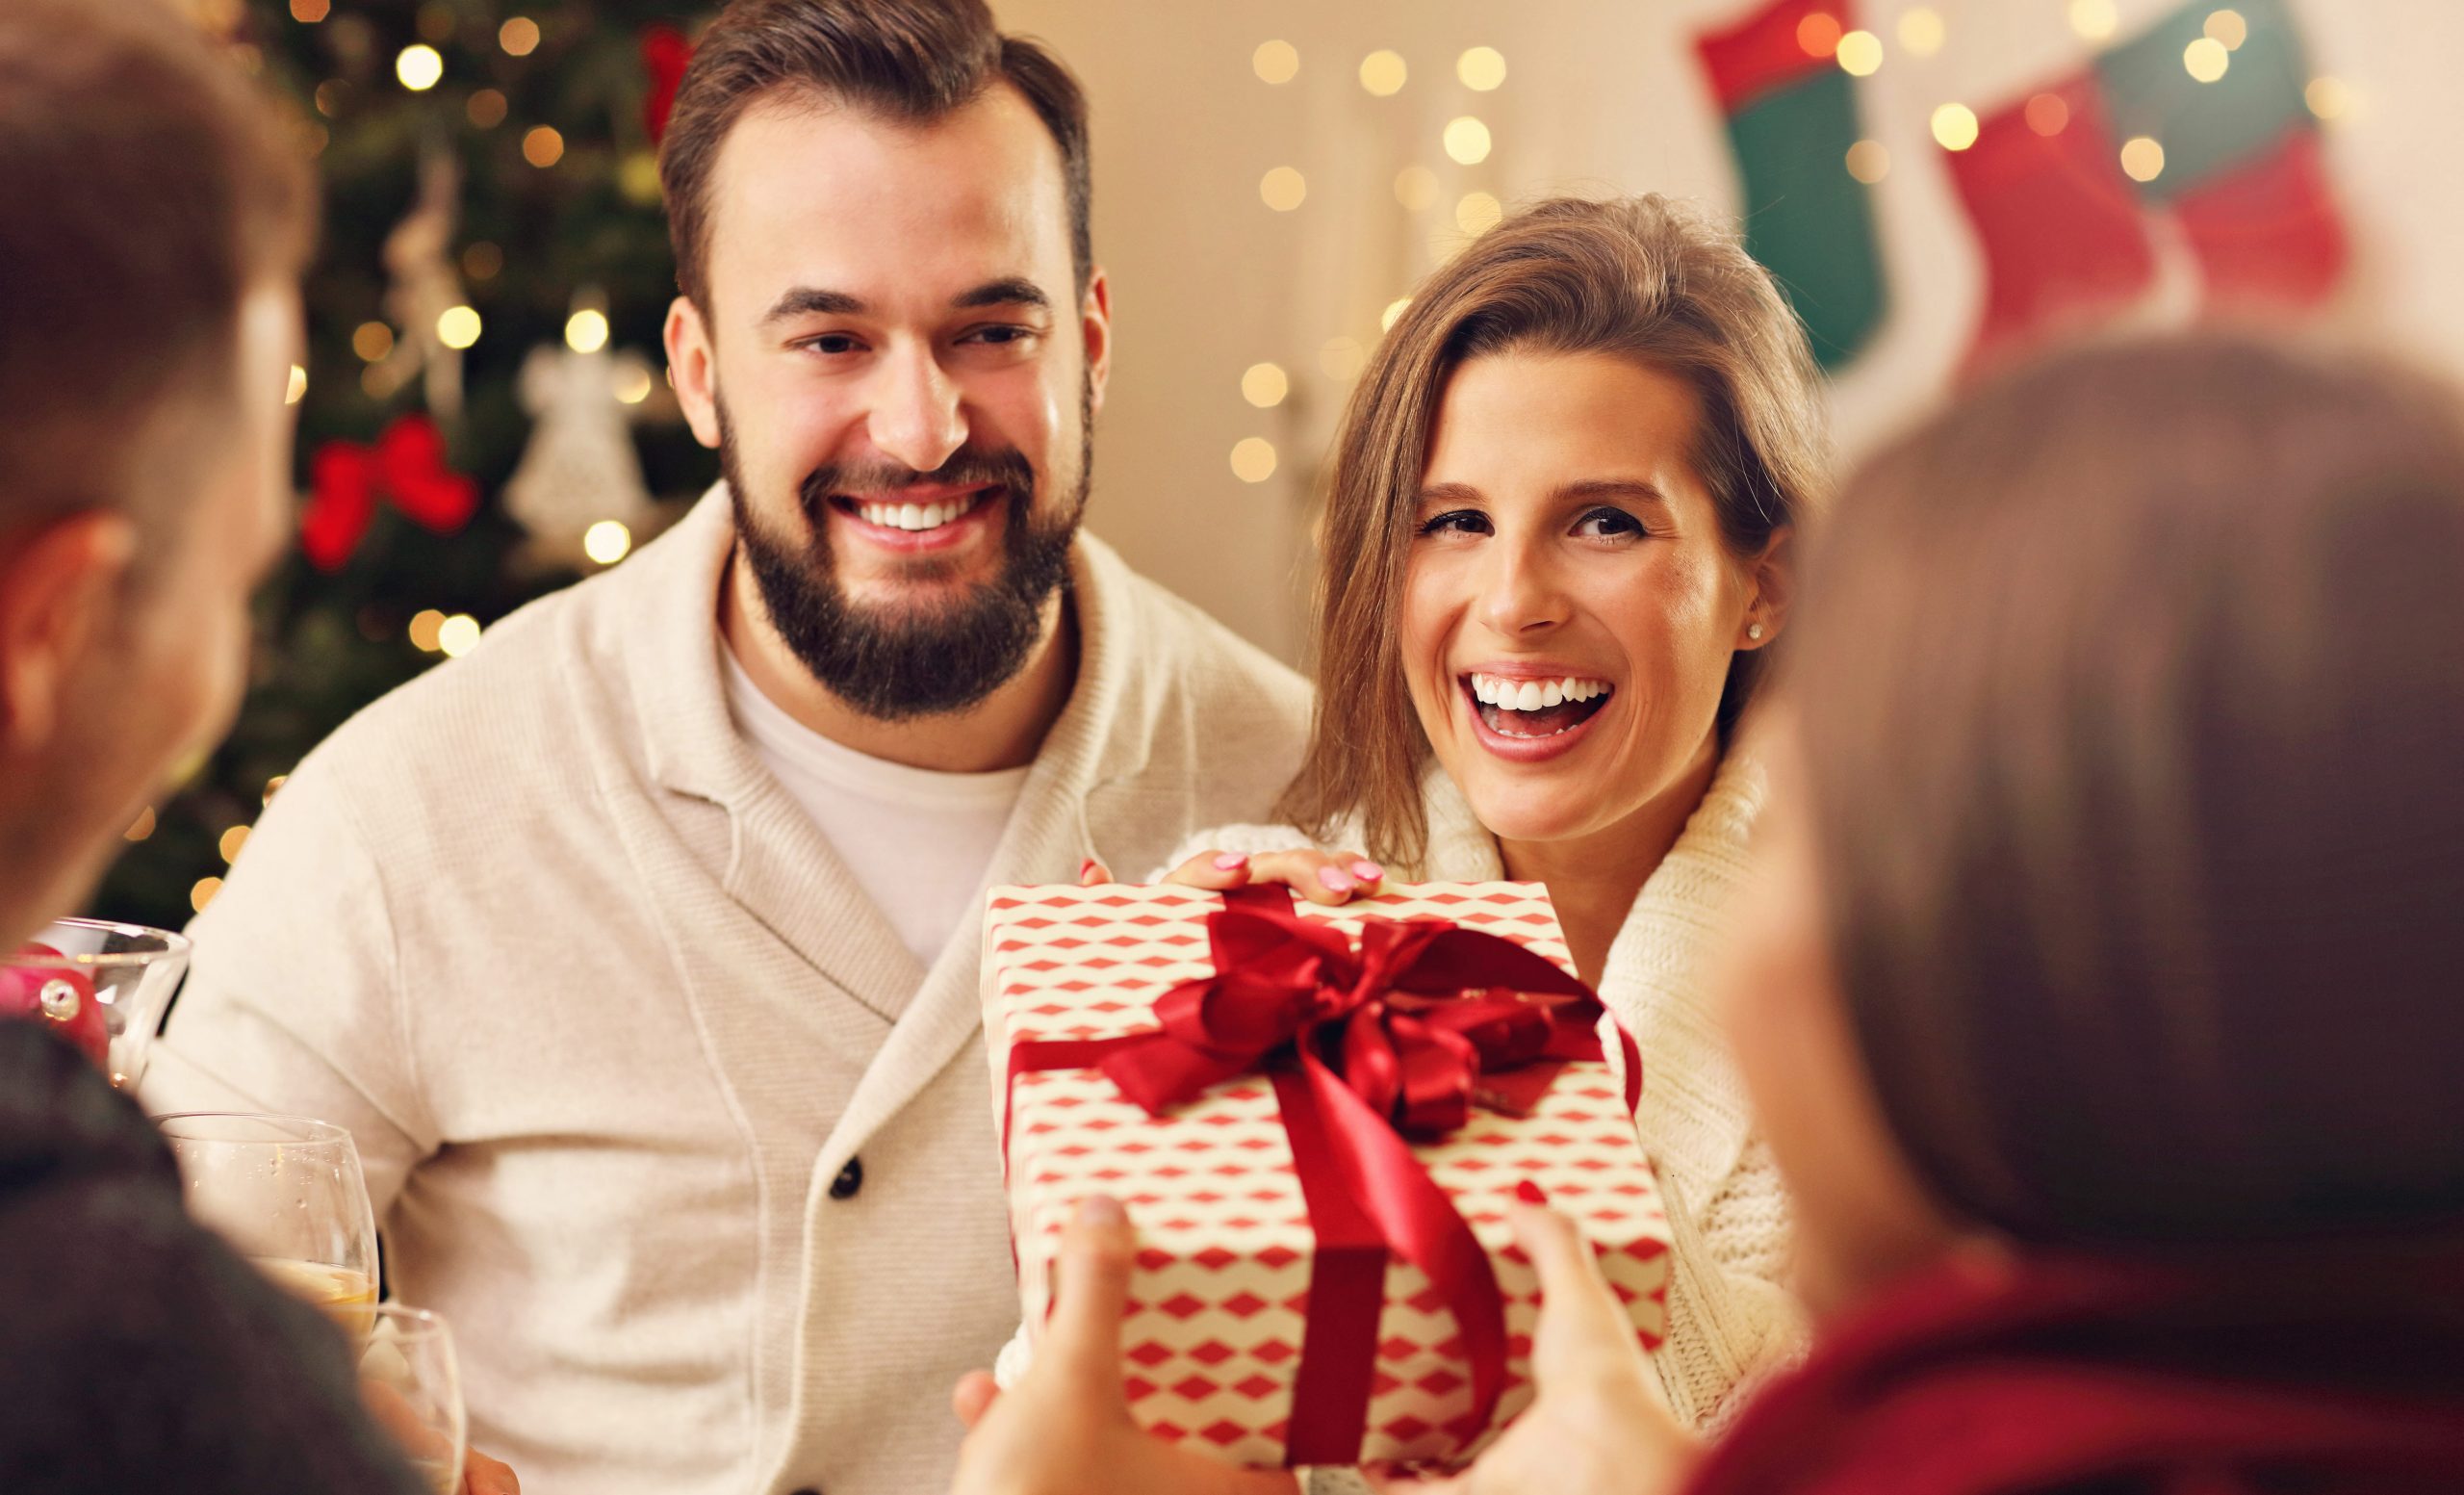 Idées cadeaux Noël - Top 10 des meilleurs cadeaux de Noël pour